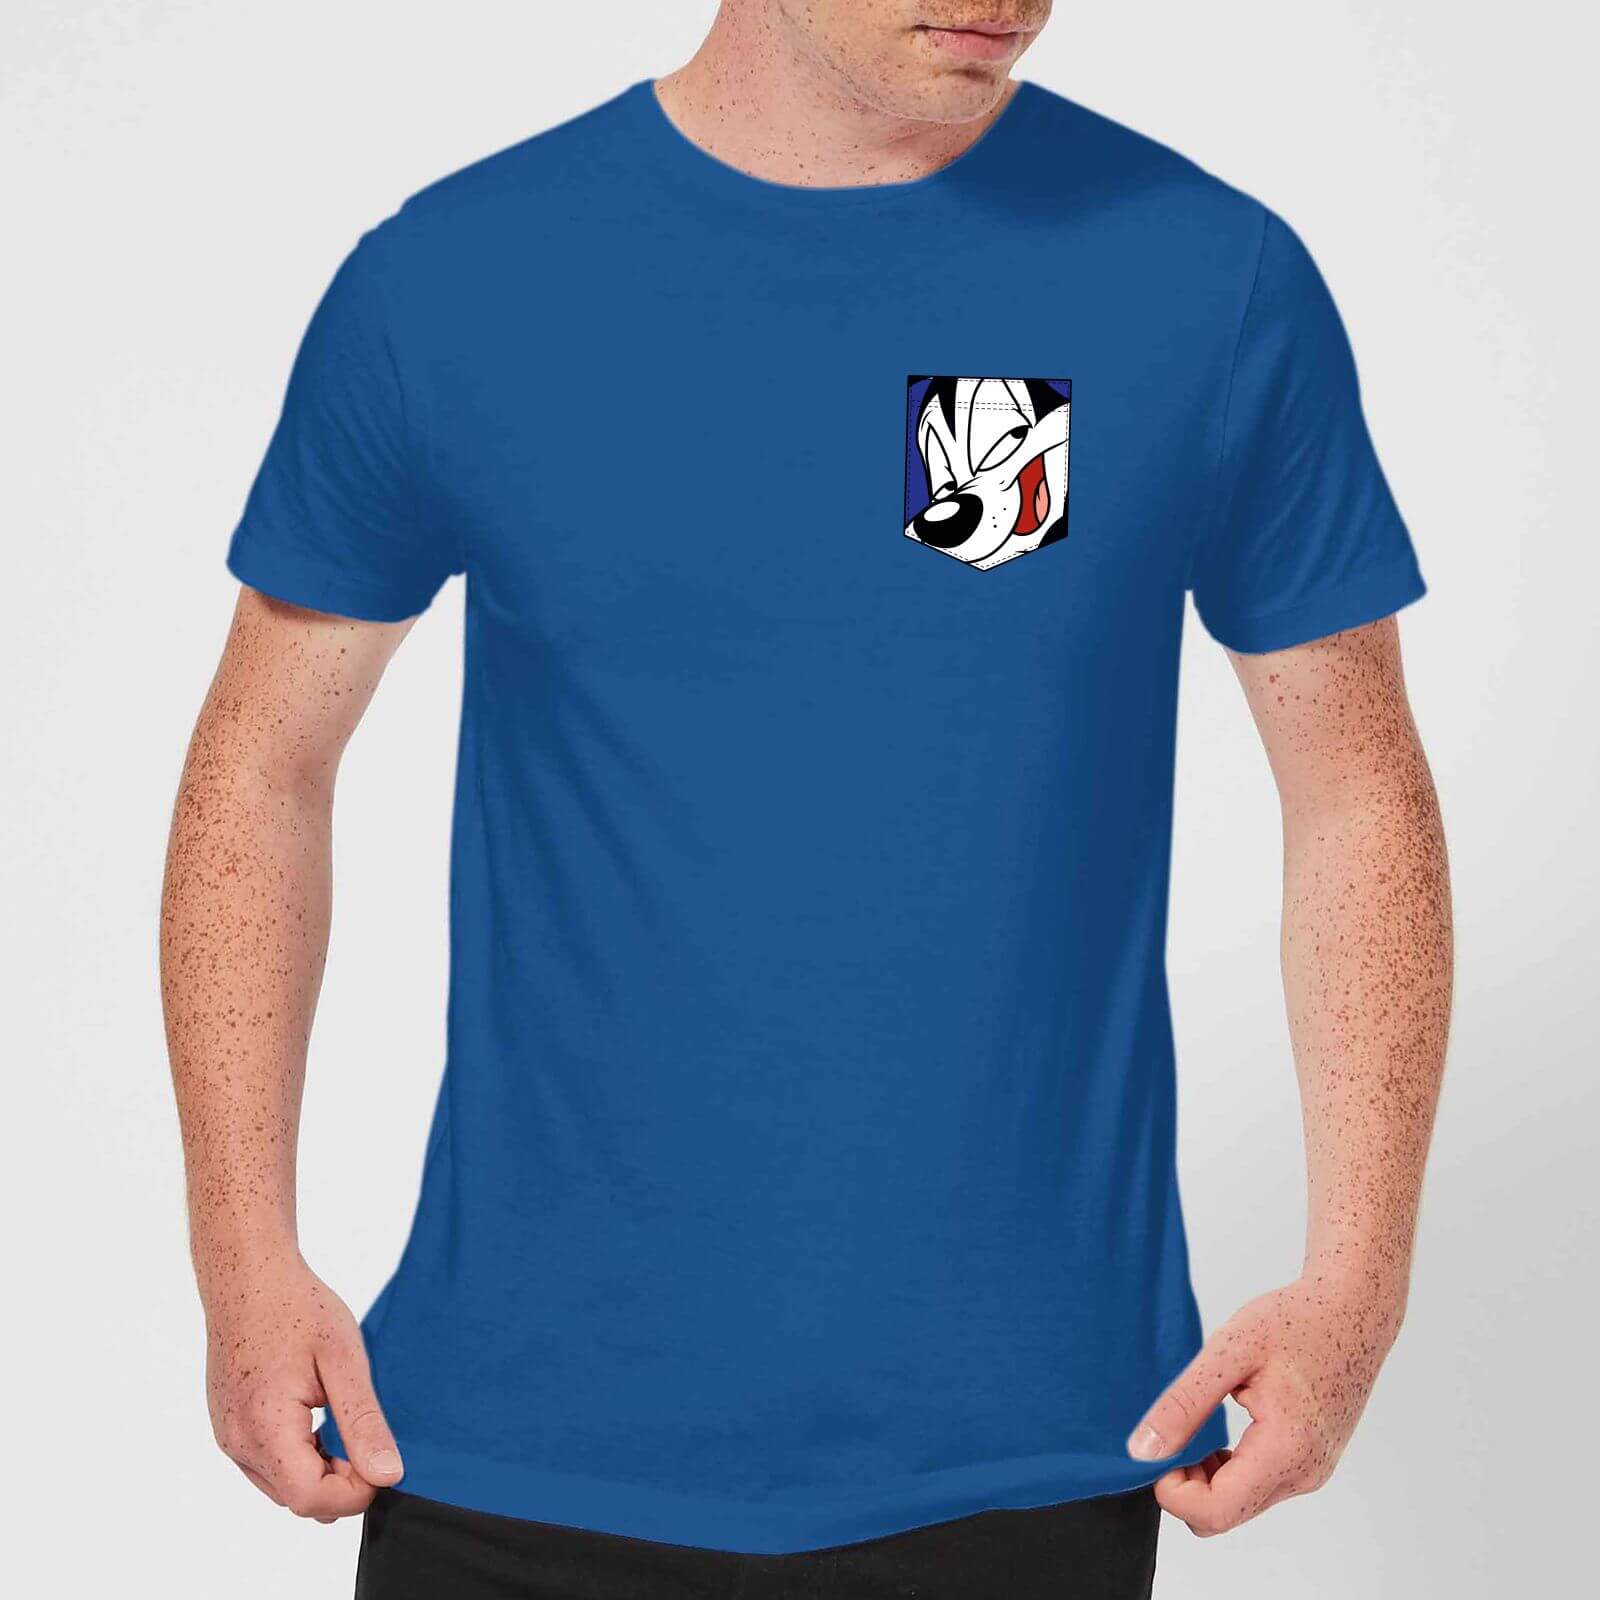 T-Shirt Homme Pepe le putois Fausse Poche Looney Tunes - Bleu Roi - S - Royal Blue